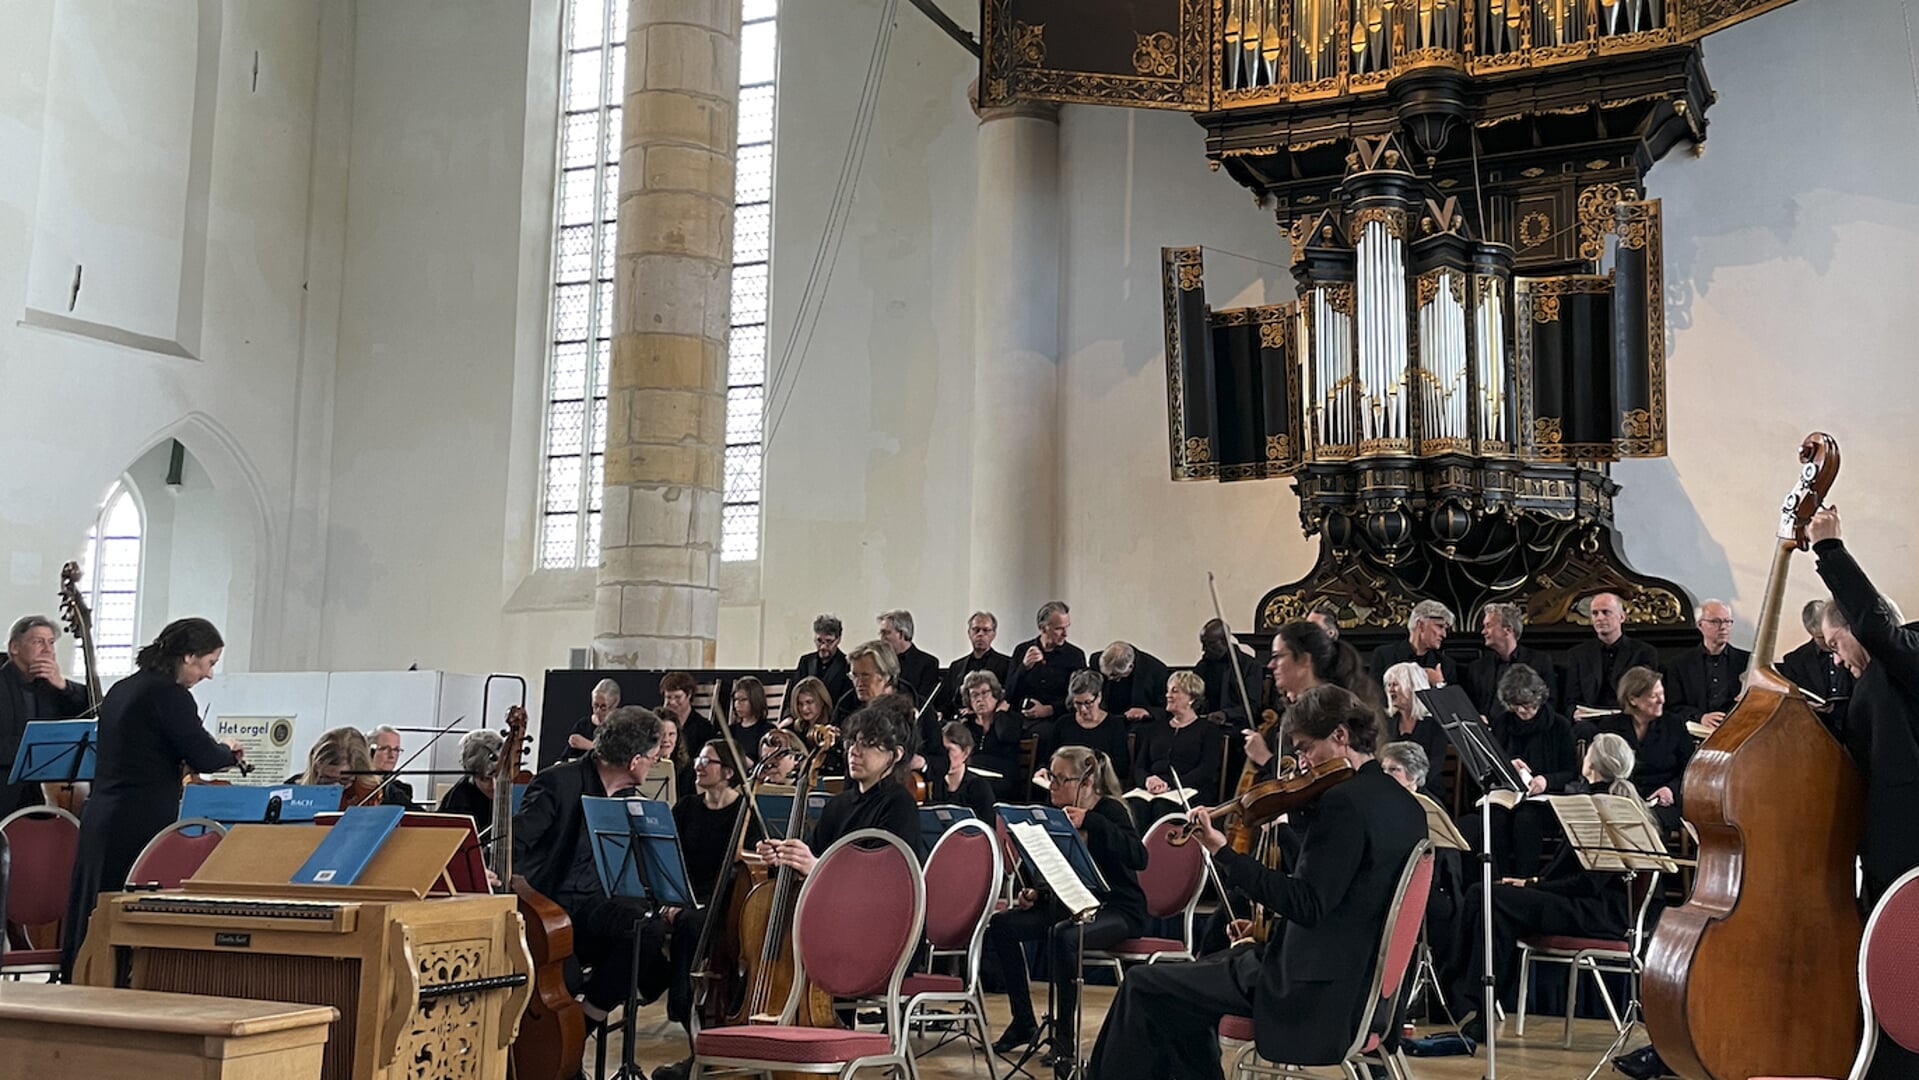 Kom vrijdag 15 maart naar de uitvoering van de Johannes Passion in de Westerkerk, Enkhuizen.